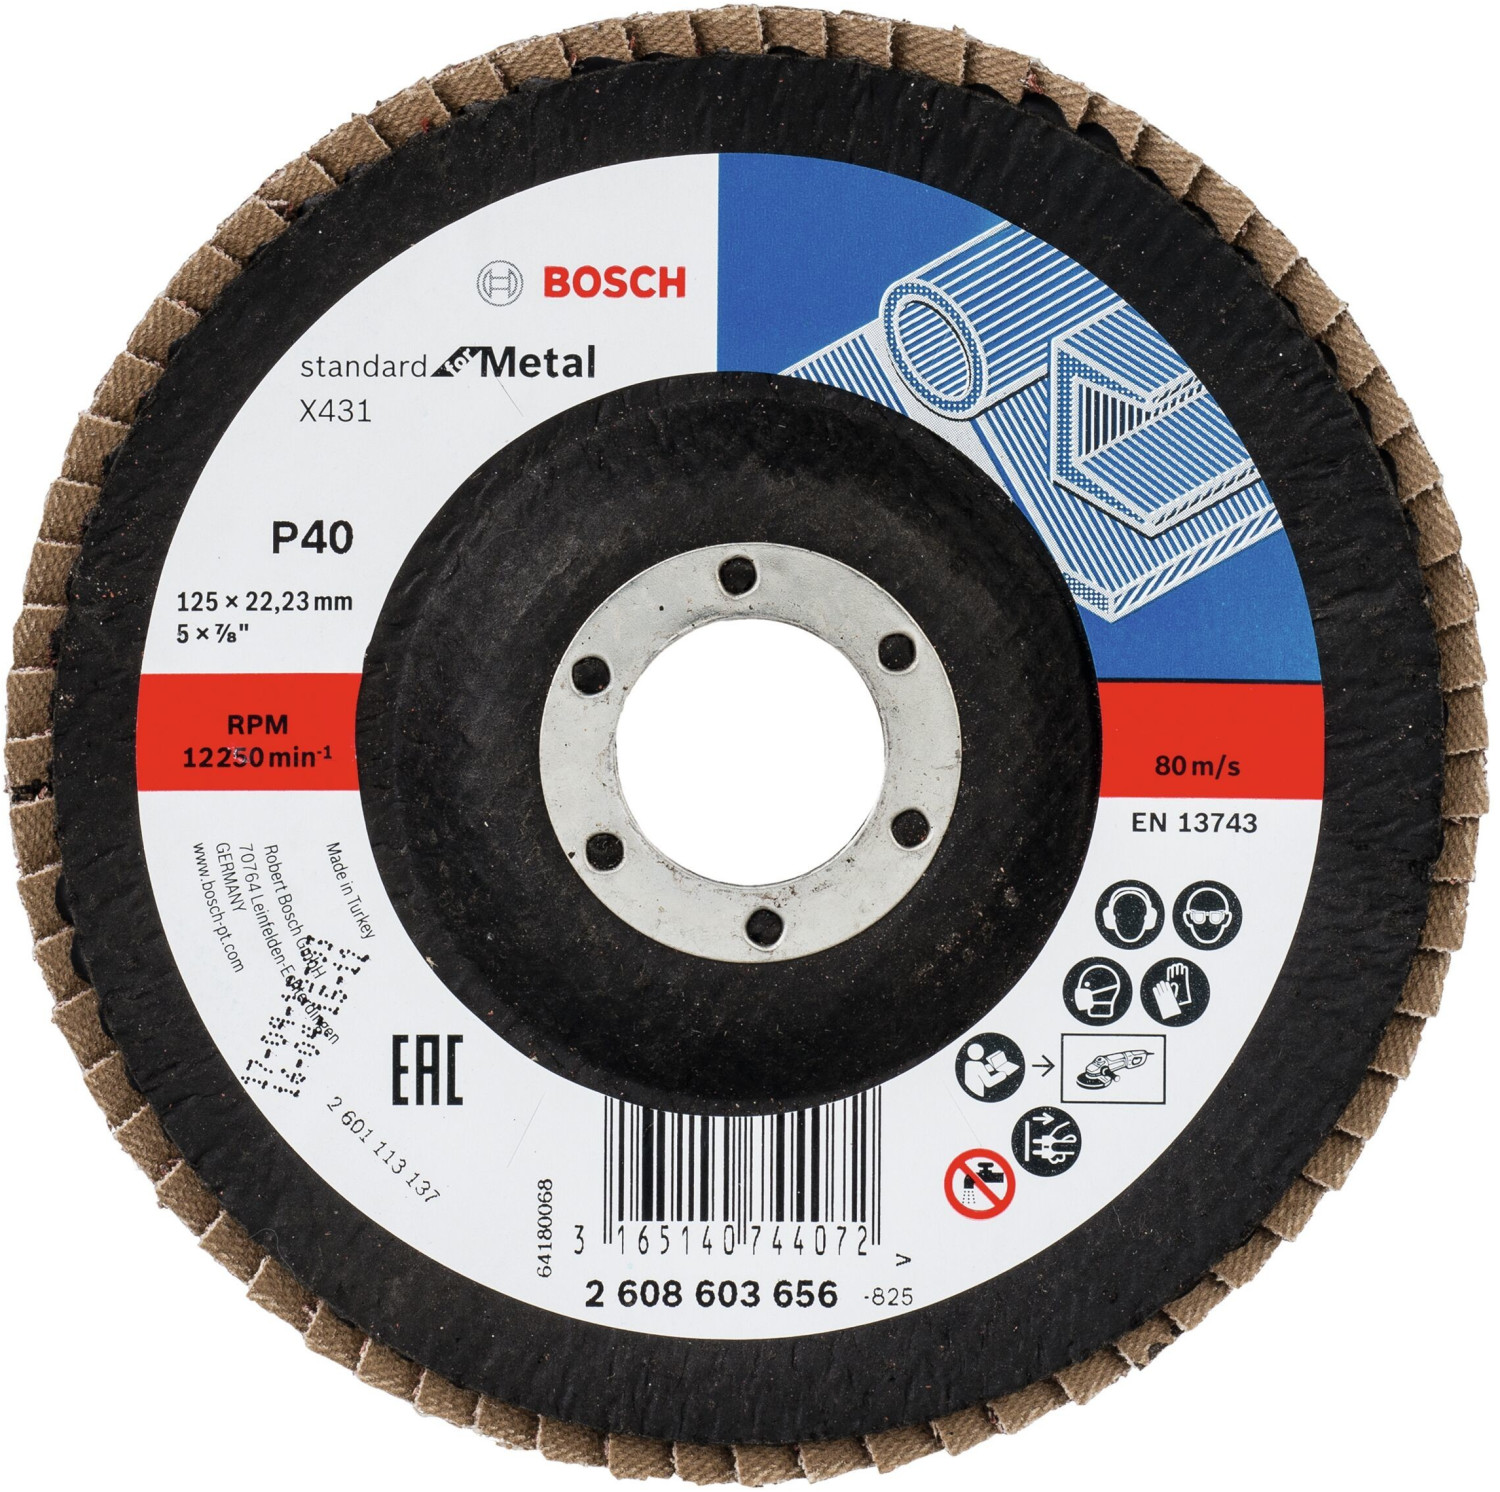 Photos - Abrasive Wheel / Belt Bosch X431 Standard for Metal - K40 D125  (2608603656)